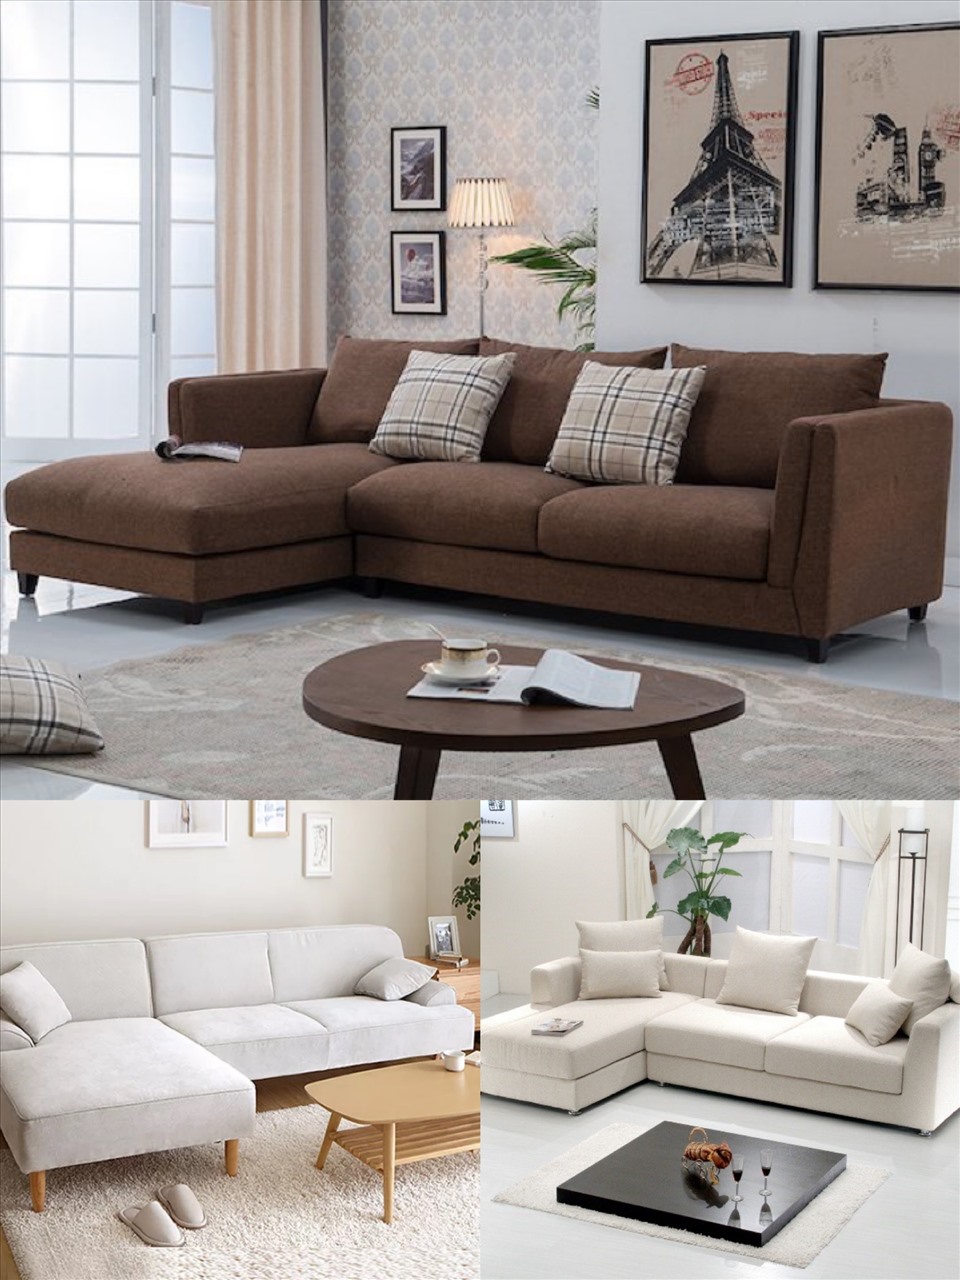 Nhiều mẫu sofa hiện có giá khá “mềm” so với túi tiền nhiều gia đình. Đồ họa: Thùy Dương